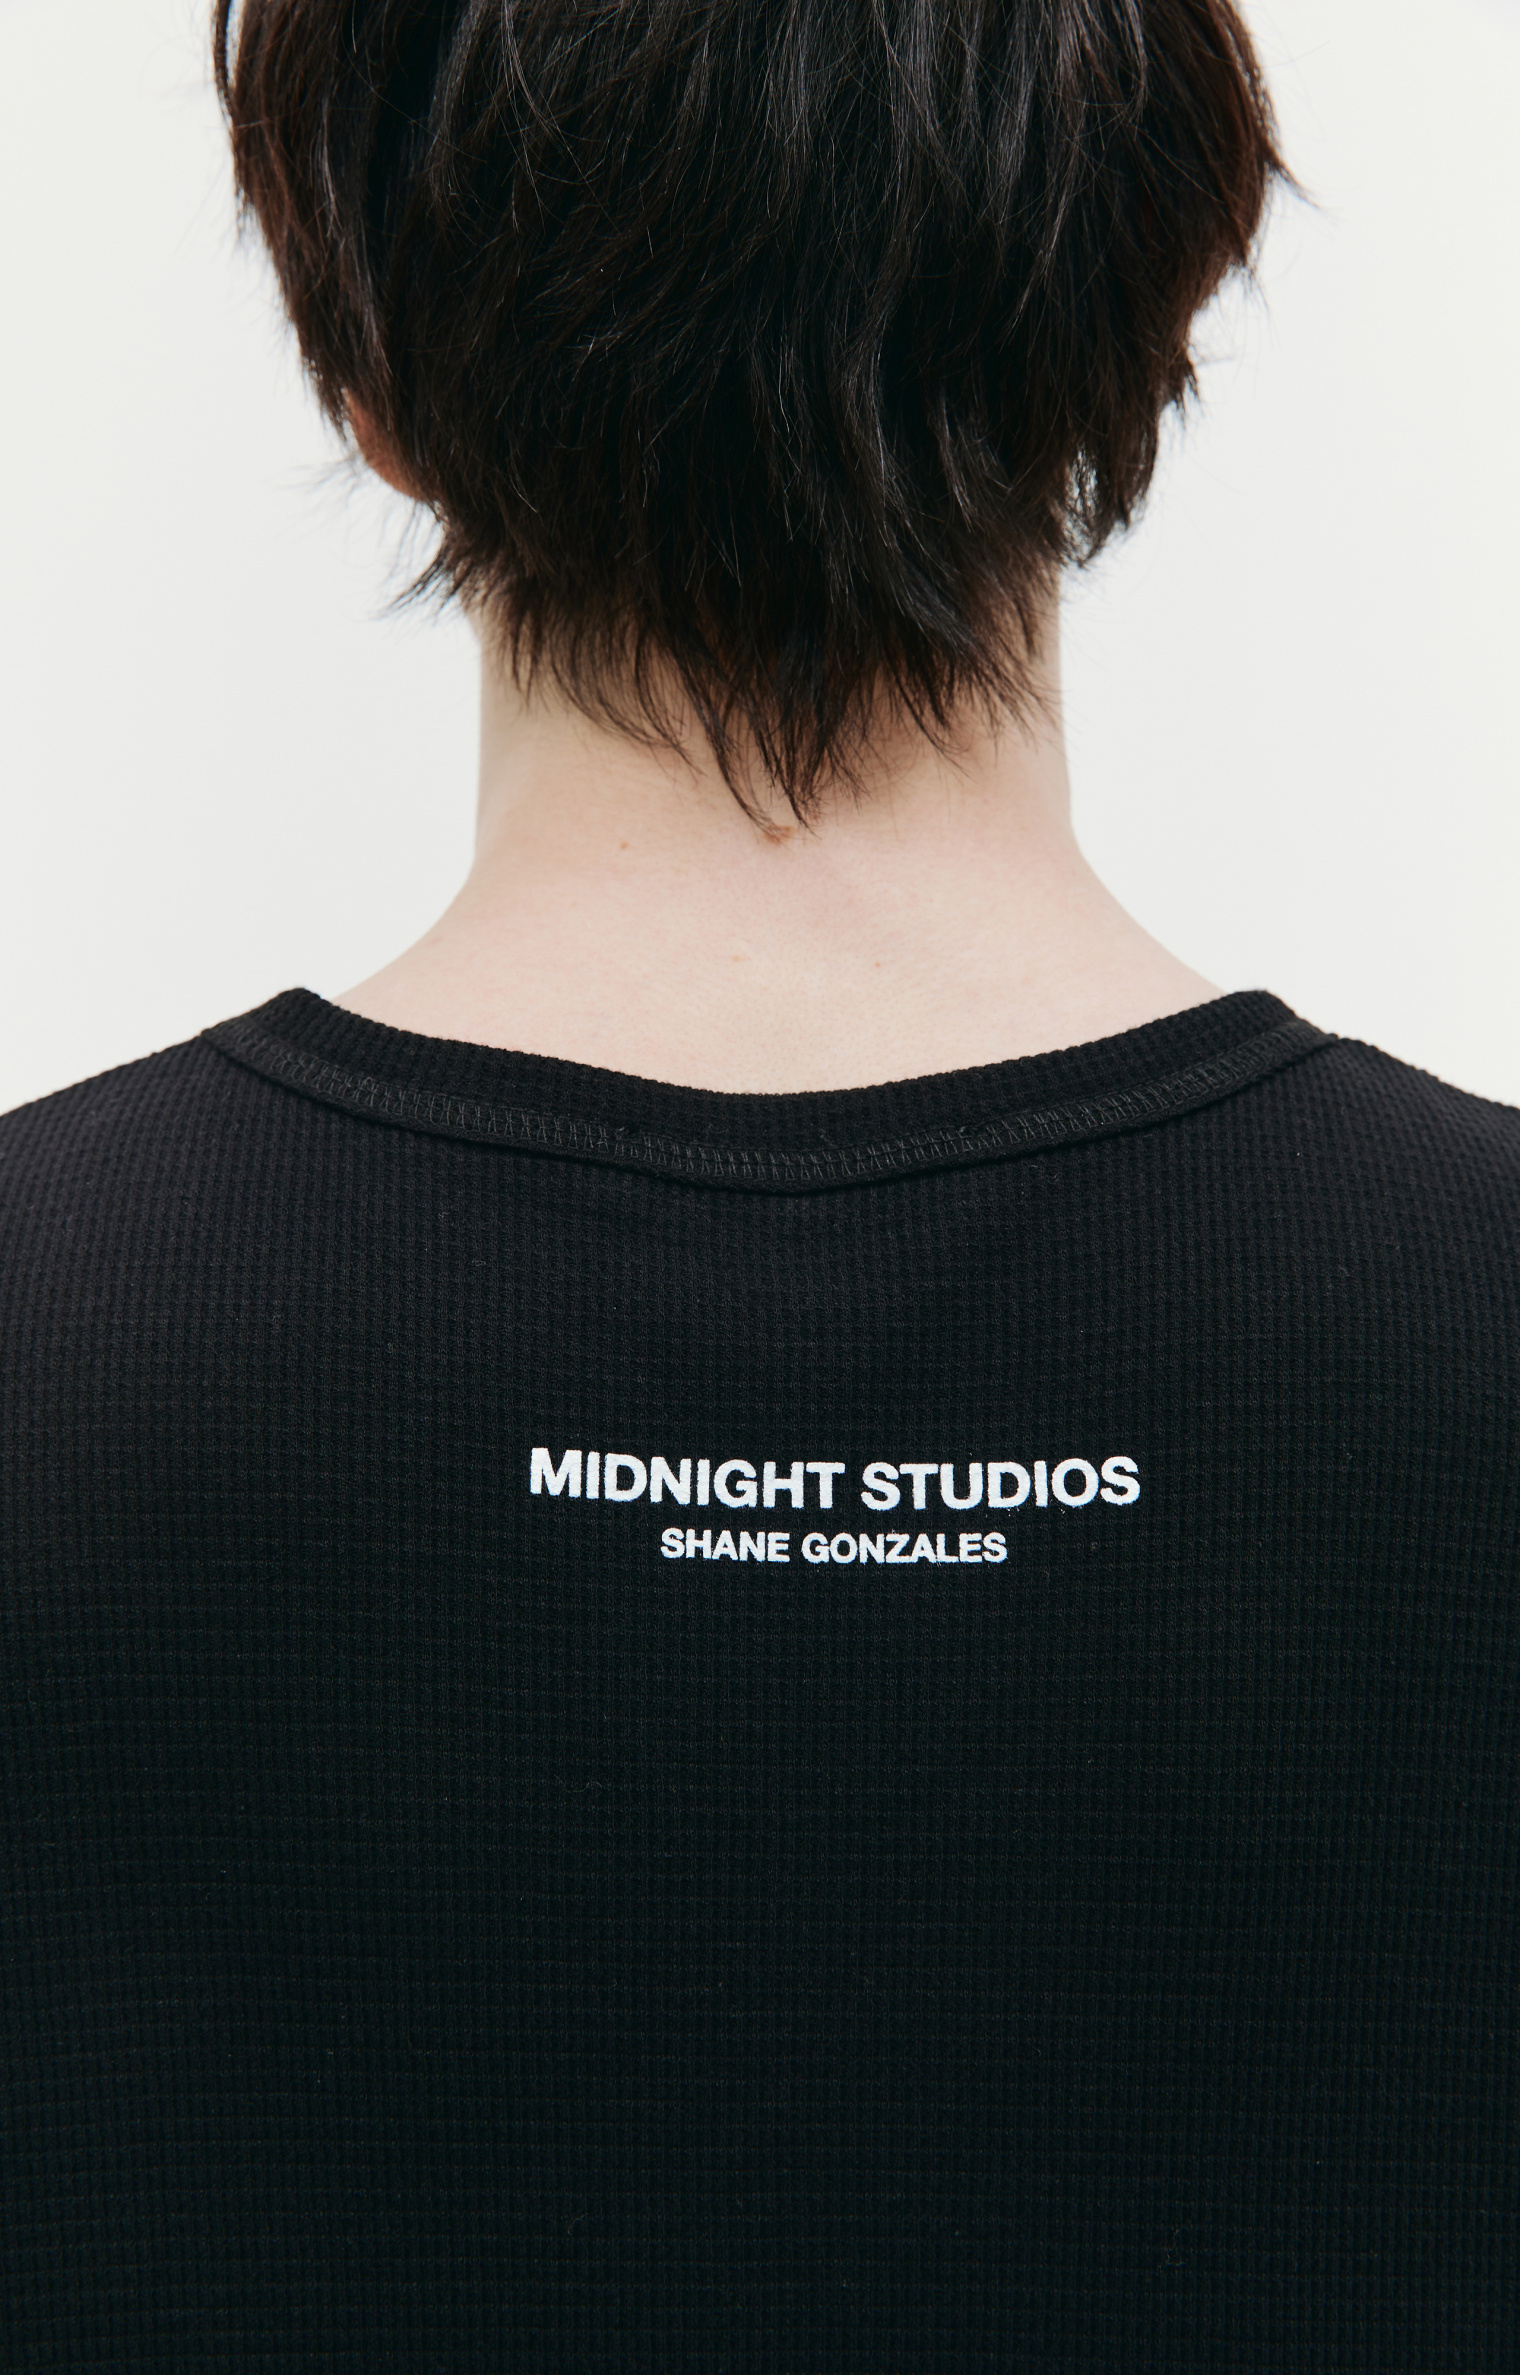 Midnight Studios Machine printed t-shirt